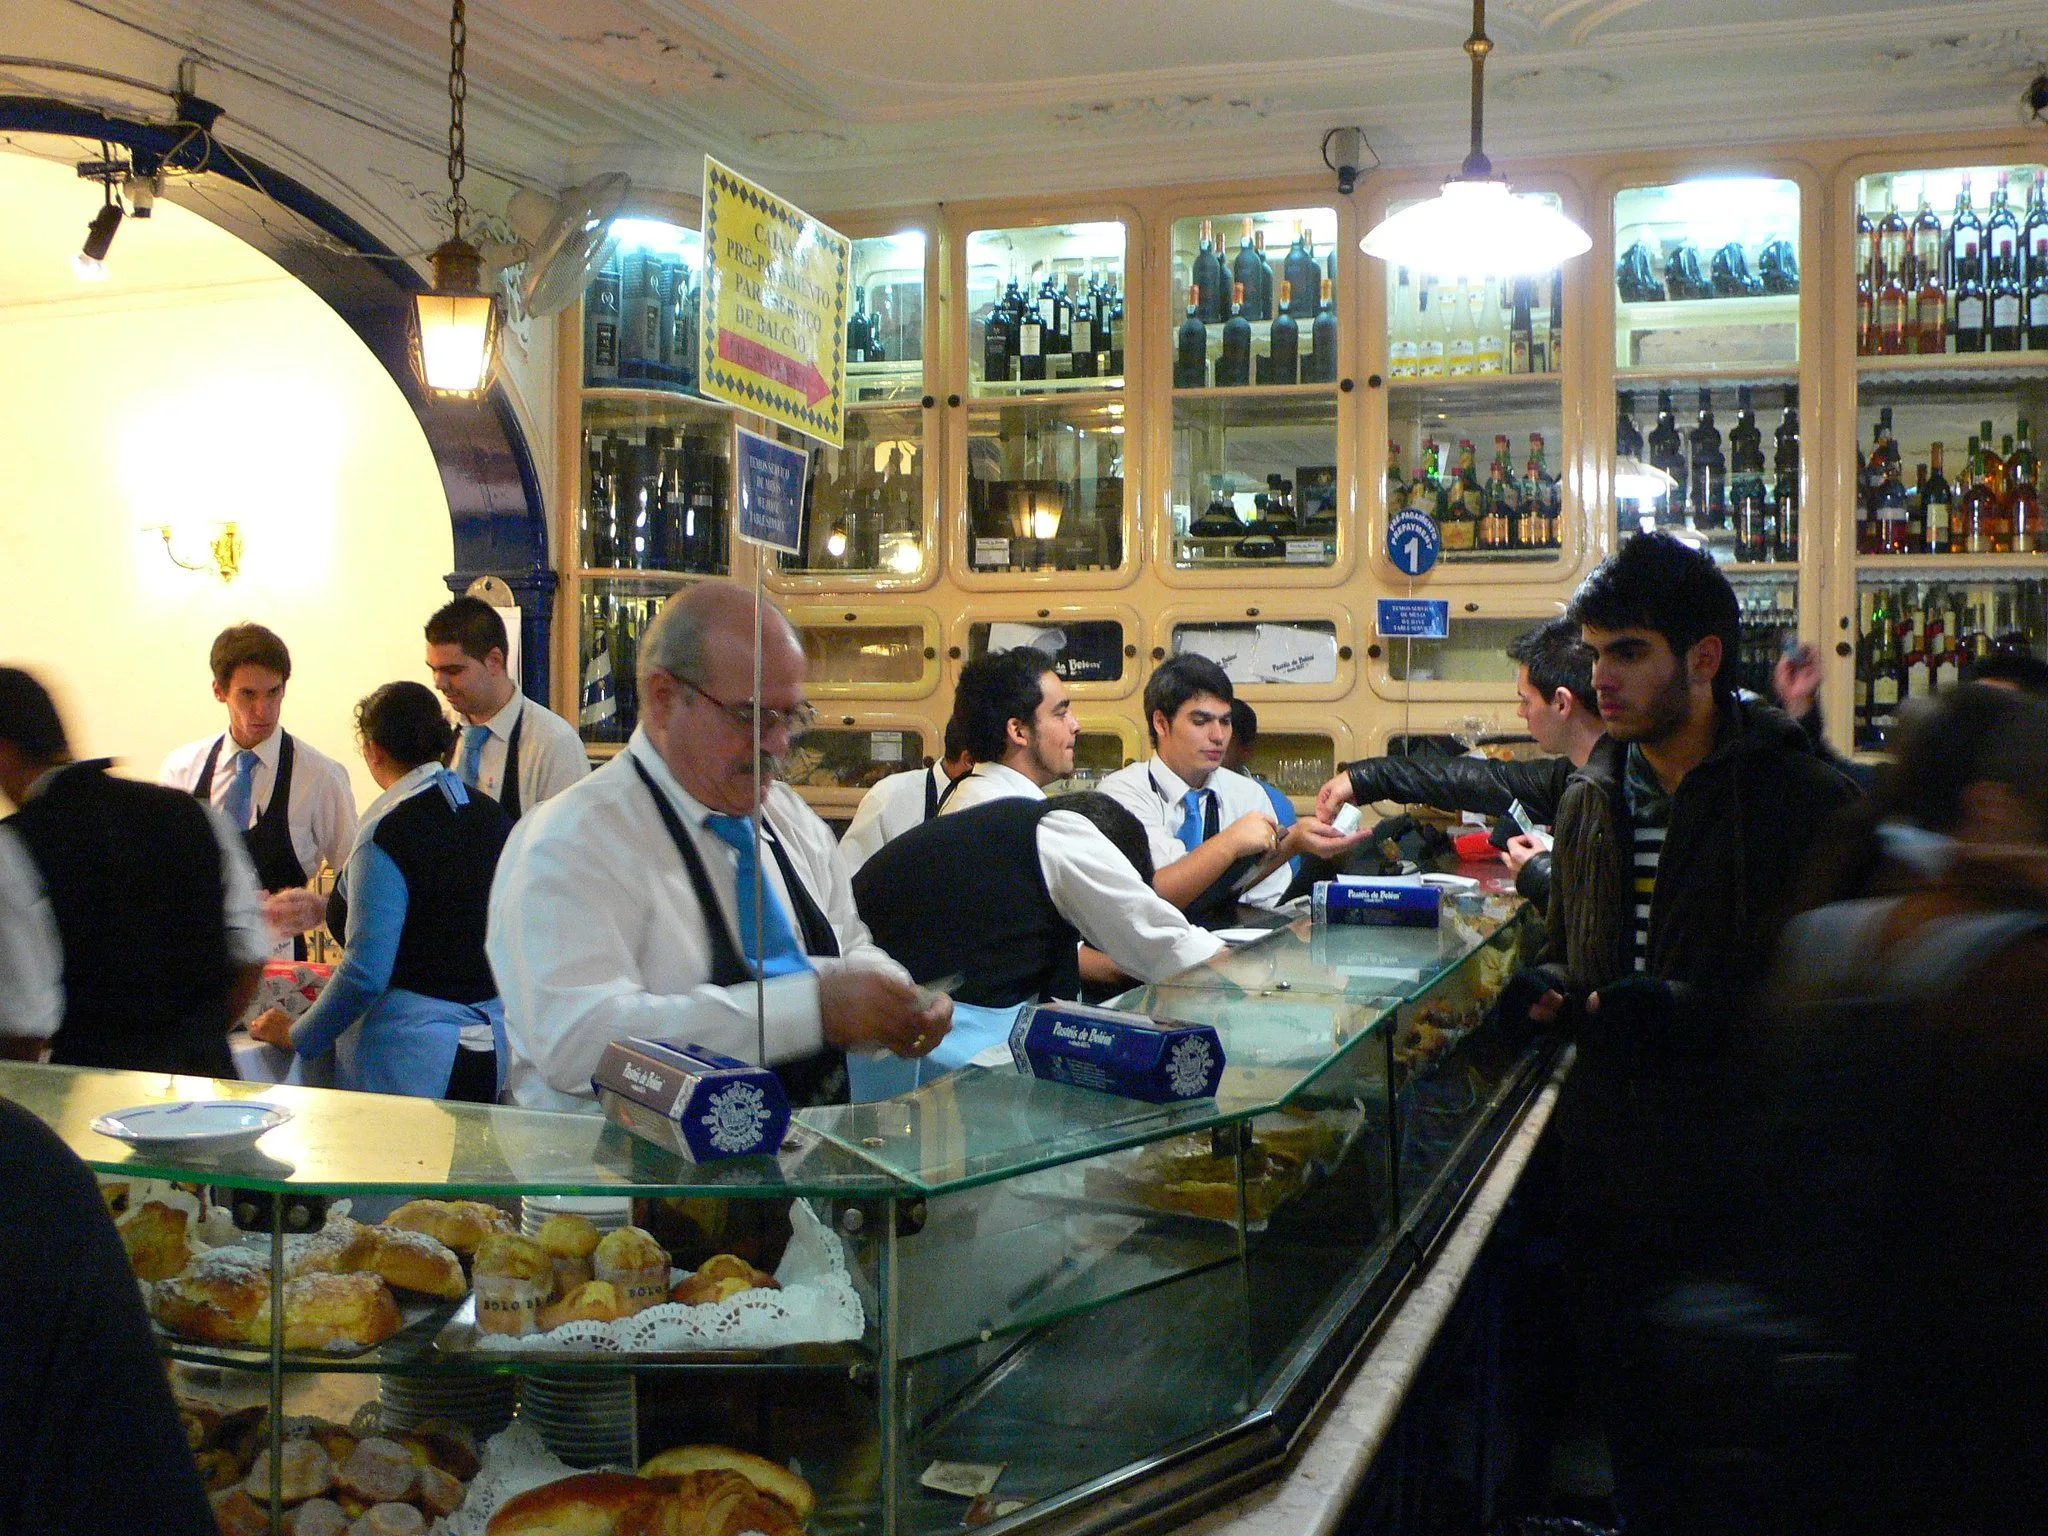 In the Pasteis de Belem shop in Lisbon